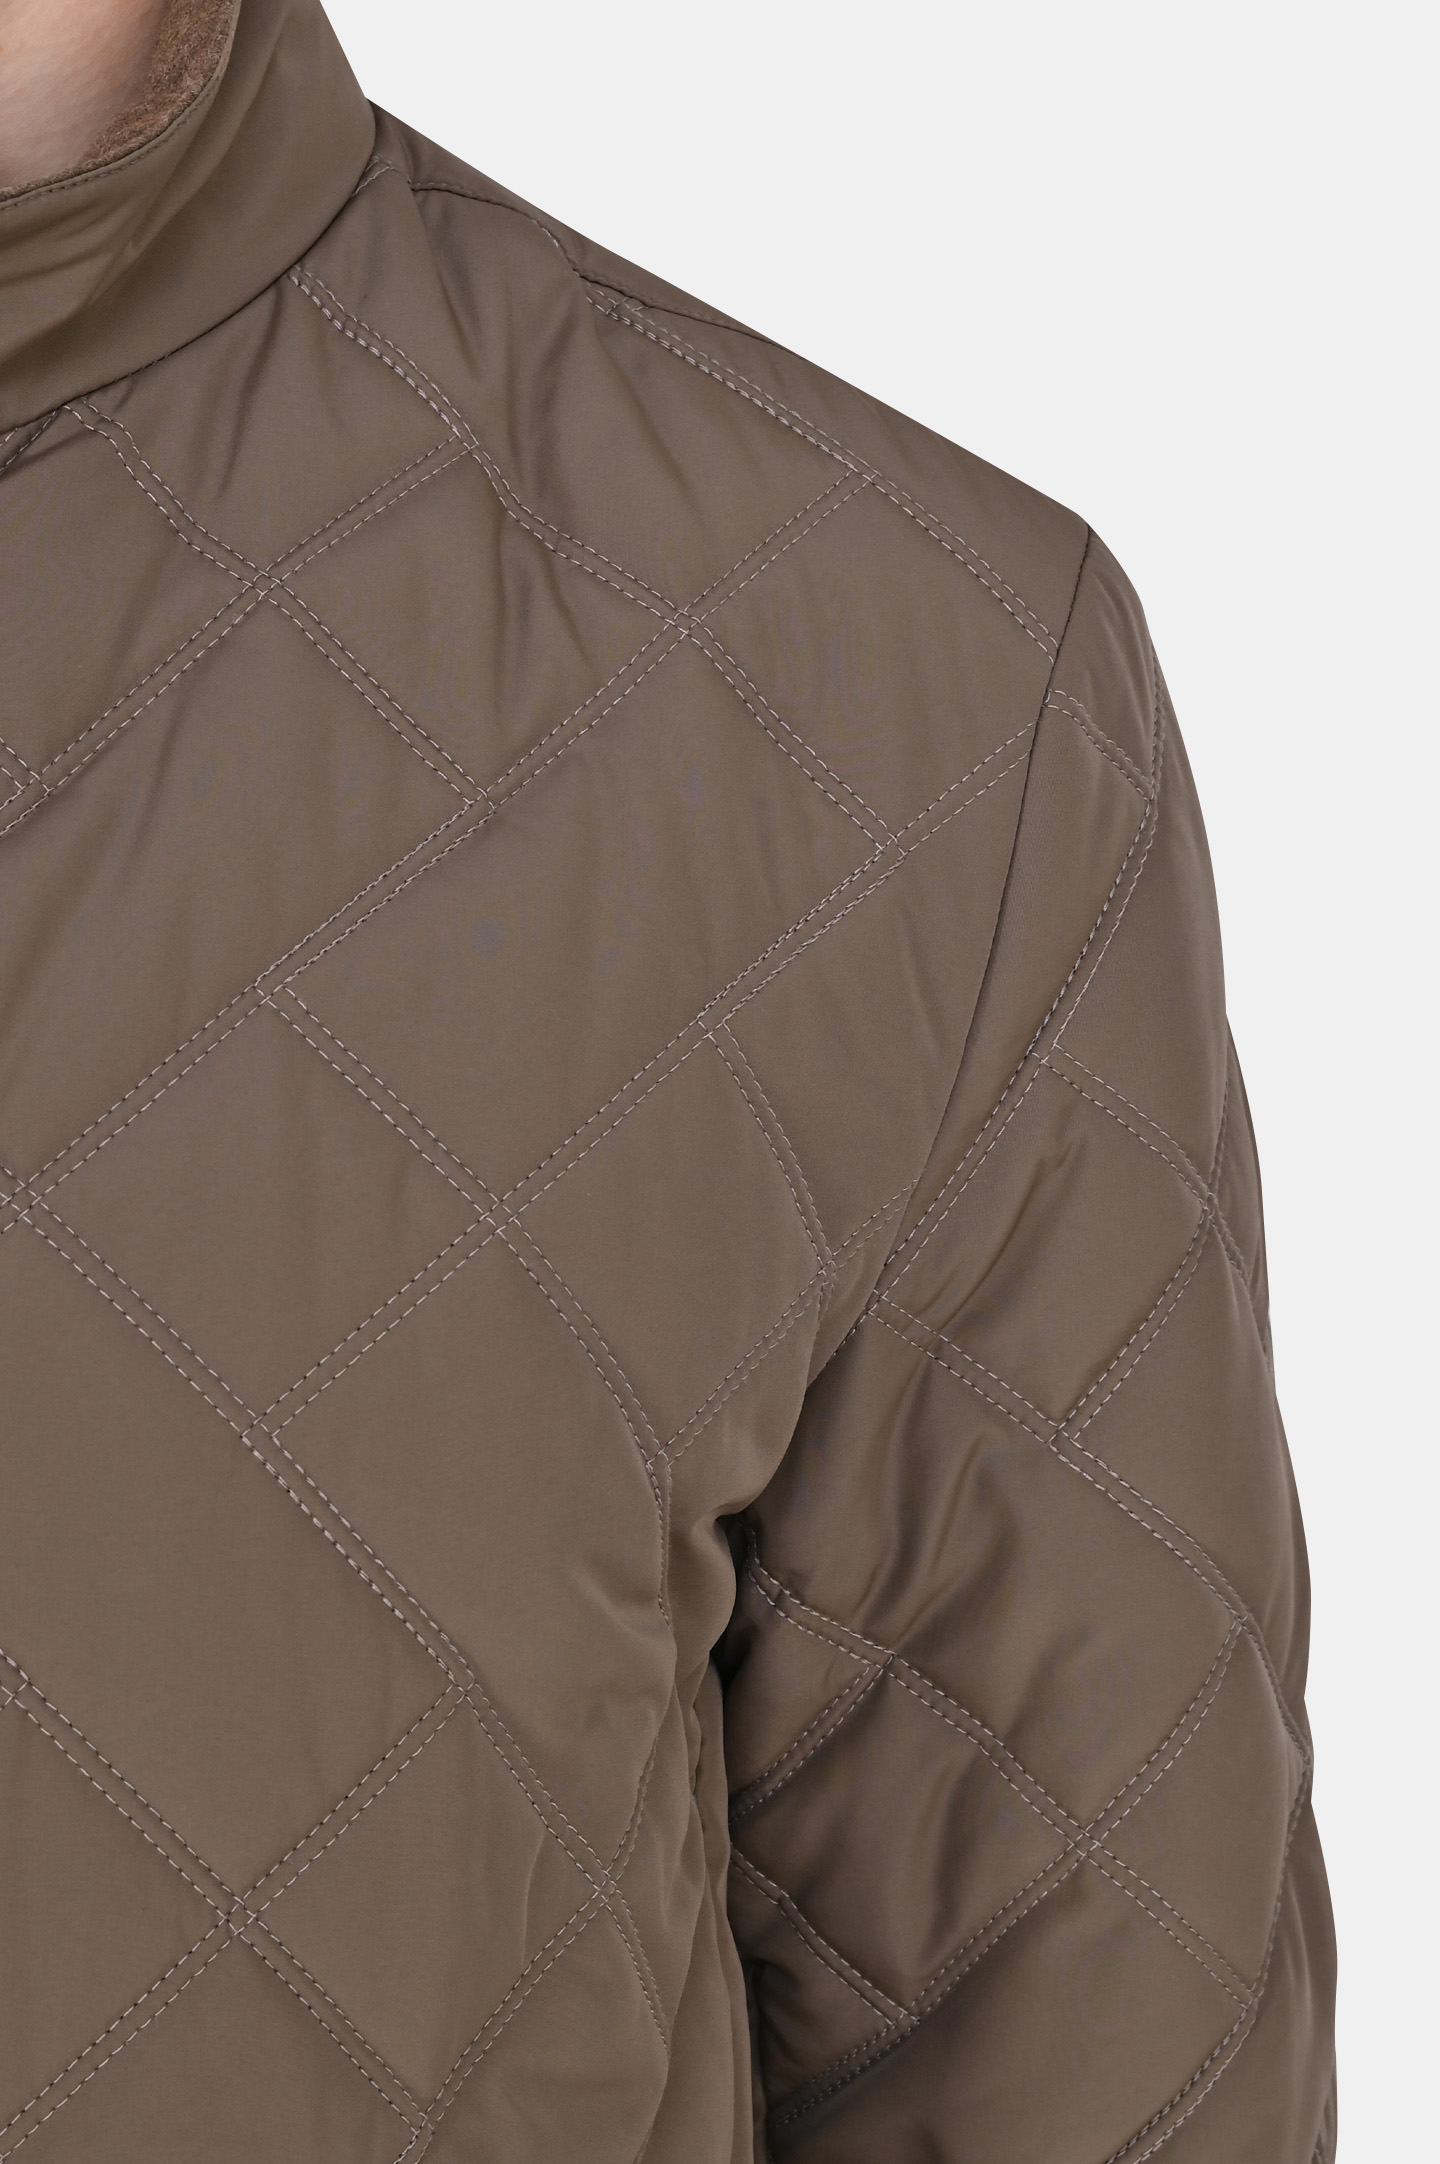 Куртка CANALI SG01121 O30369, цвет: Коричневый, Мужской